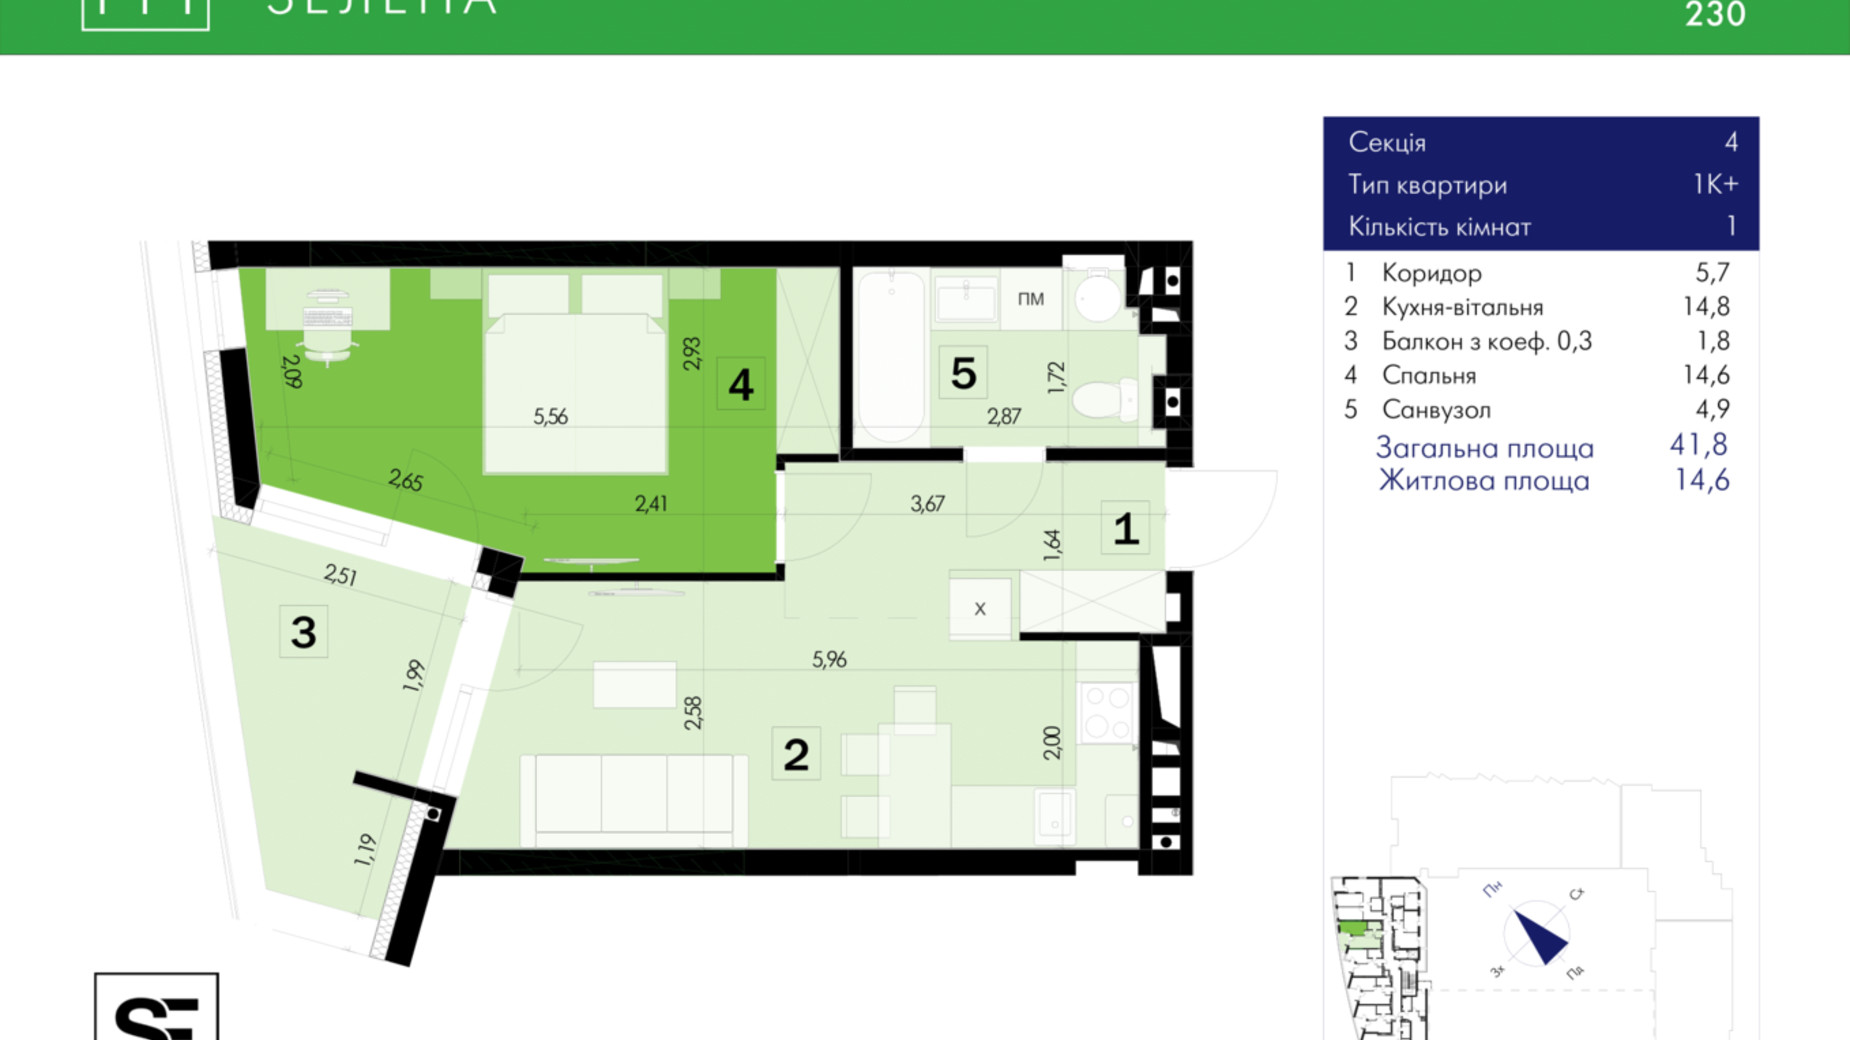 Планировка 1-комнатной квартиры в ЖК 111 Зеленая 41.8 м², фото 634039